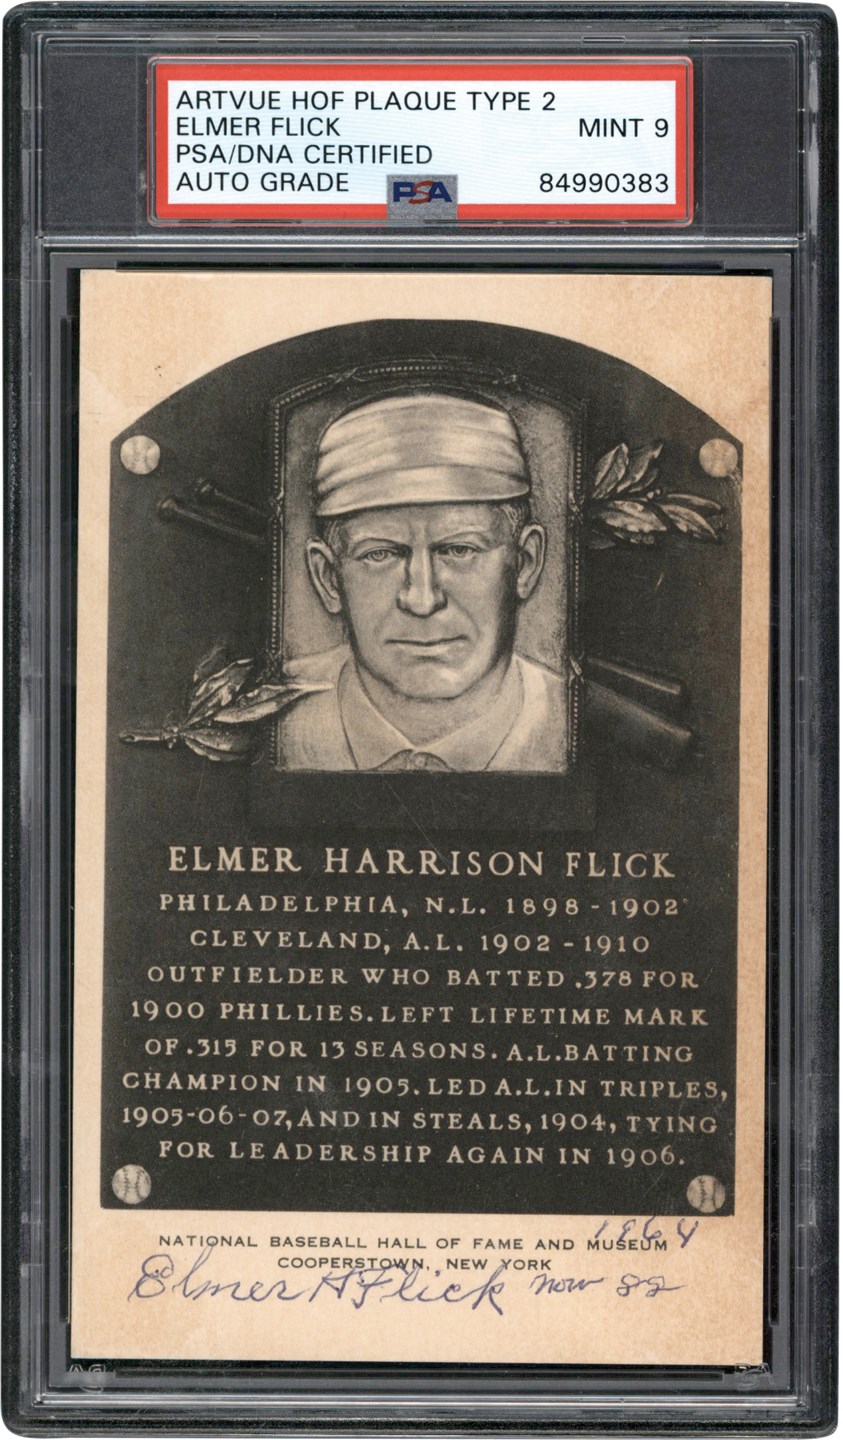 Baseball Autographs - 1964 Elmer Flick Triple-Signed Artvue Hall of Fame Postcard (PSA MINT 9)